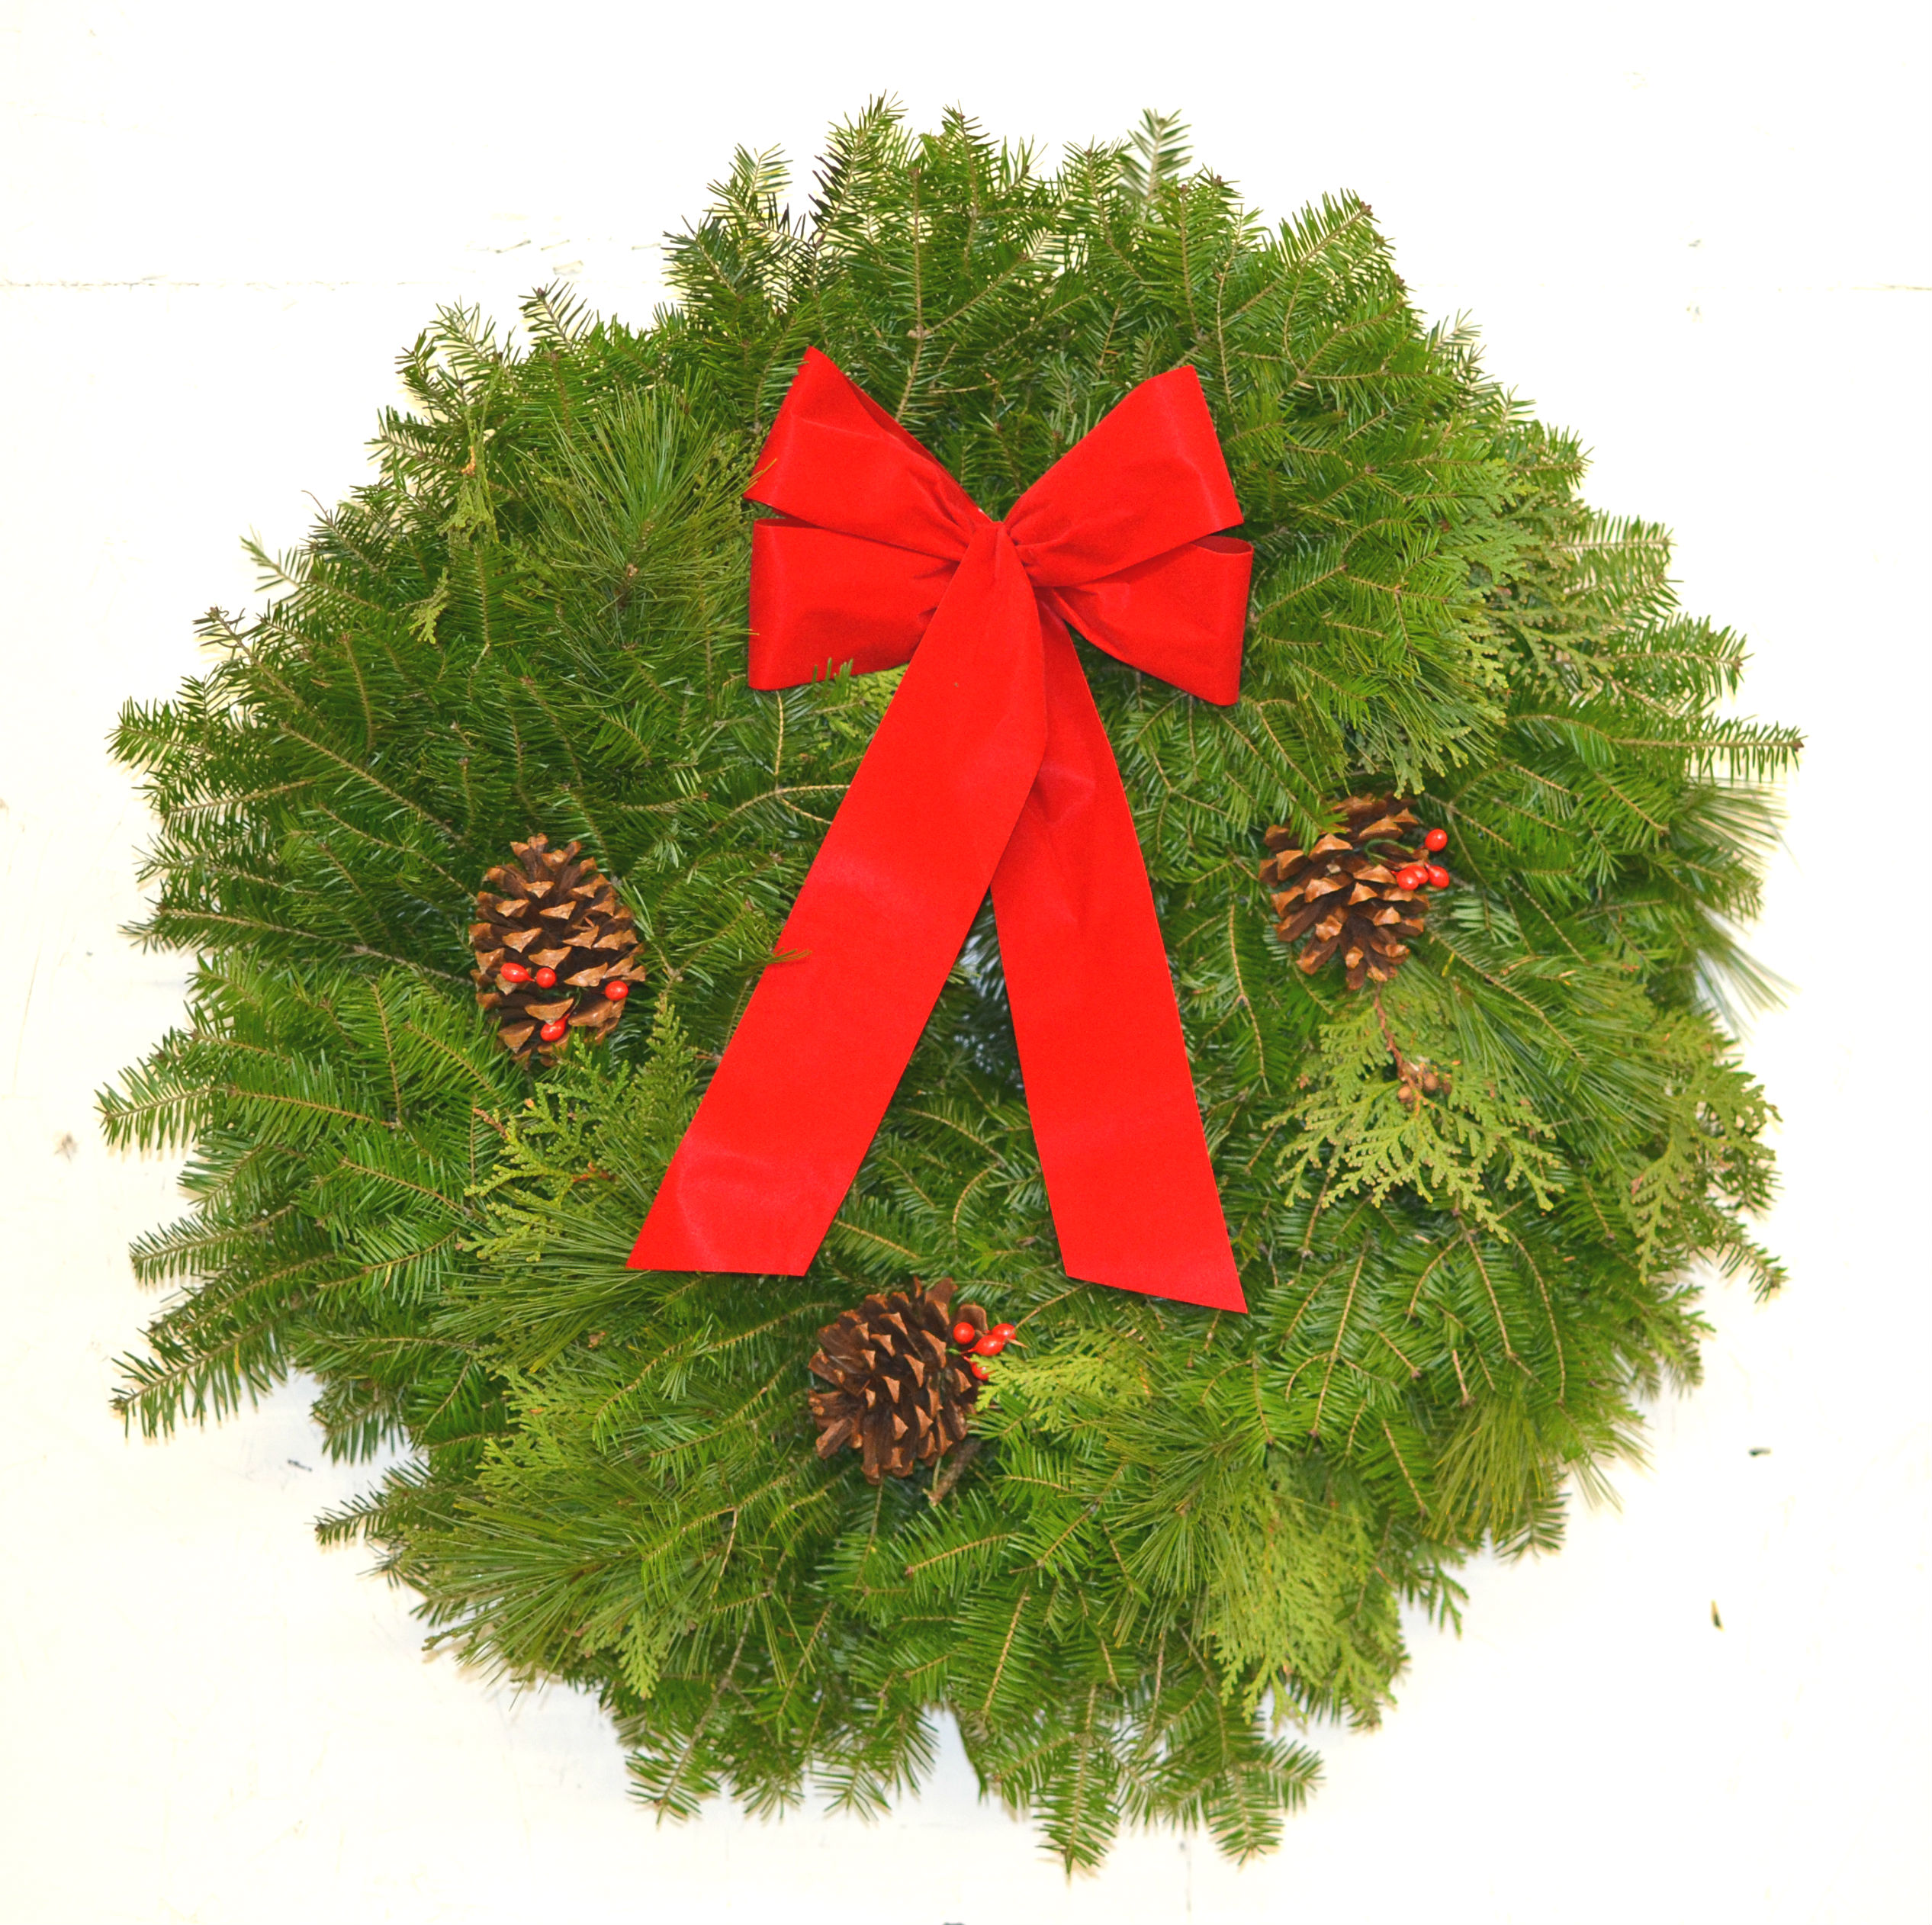 Mixed Balsam Fir, Cedar, Pine Wreath